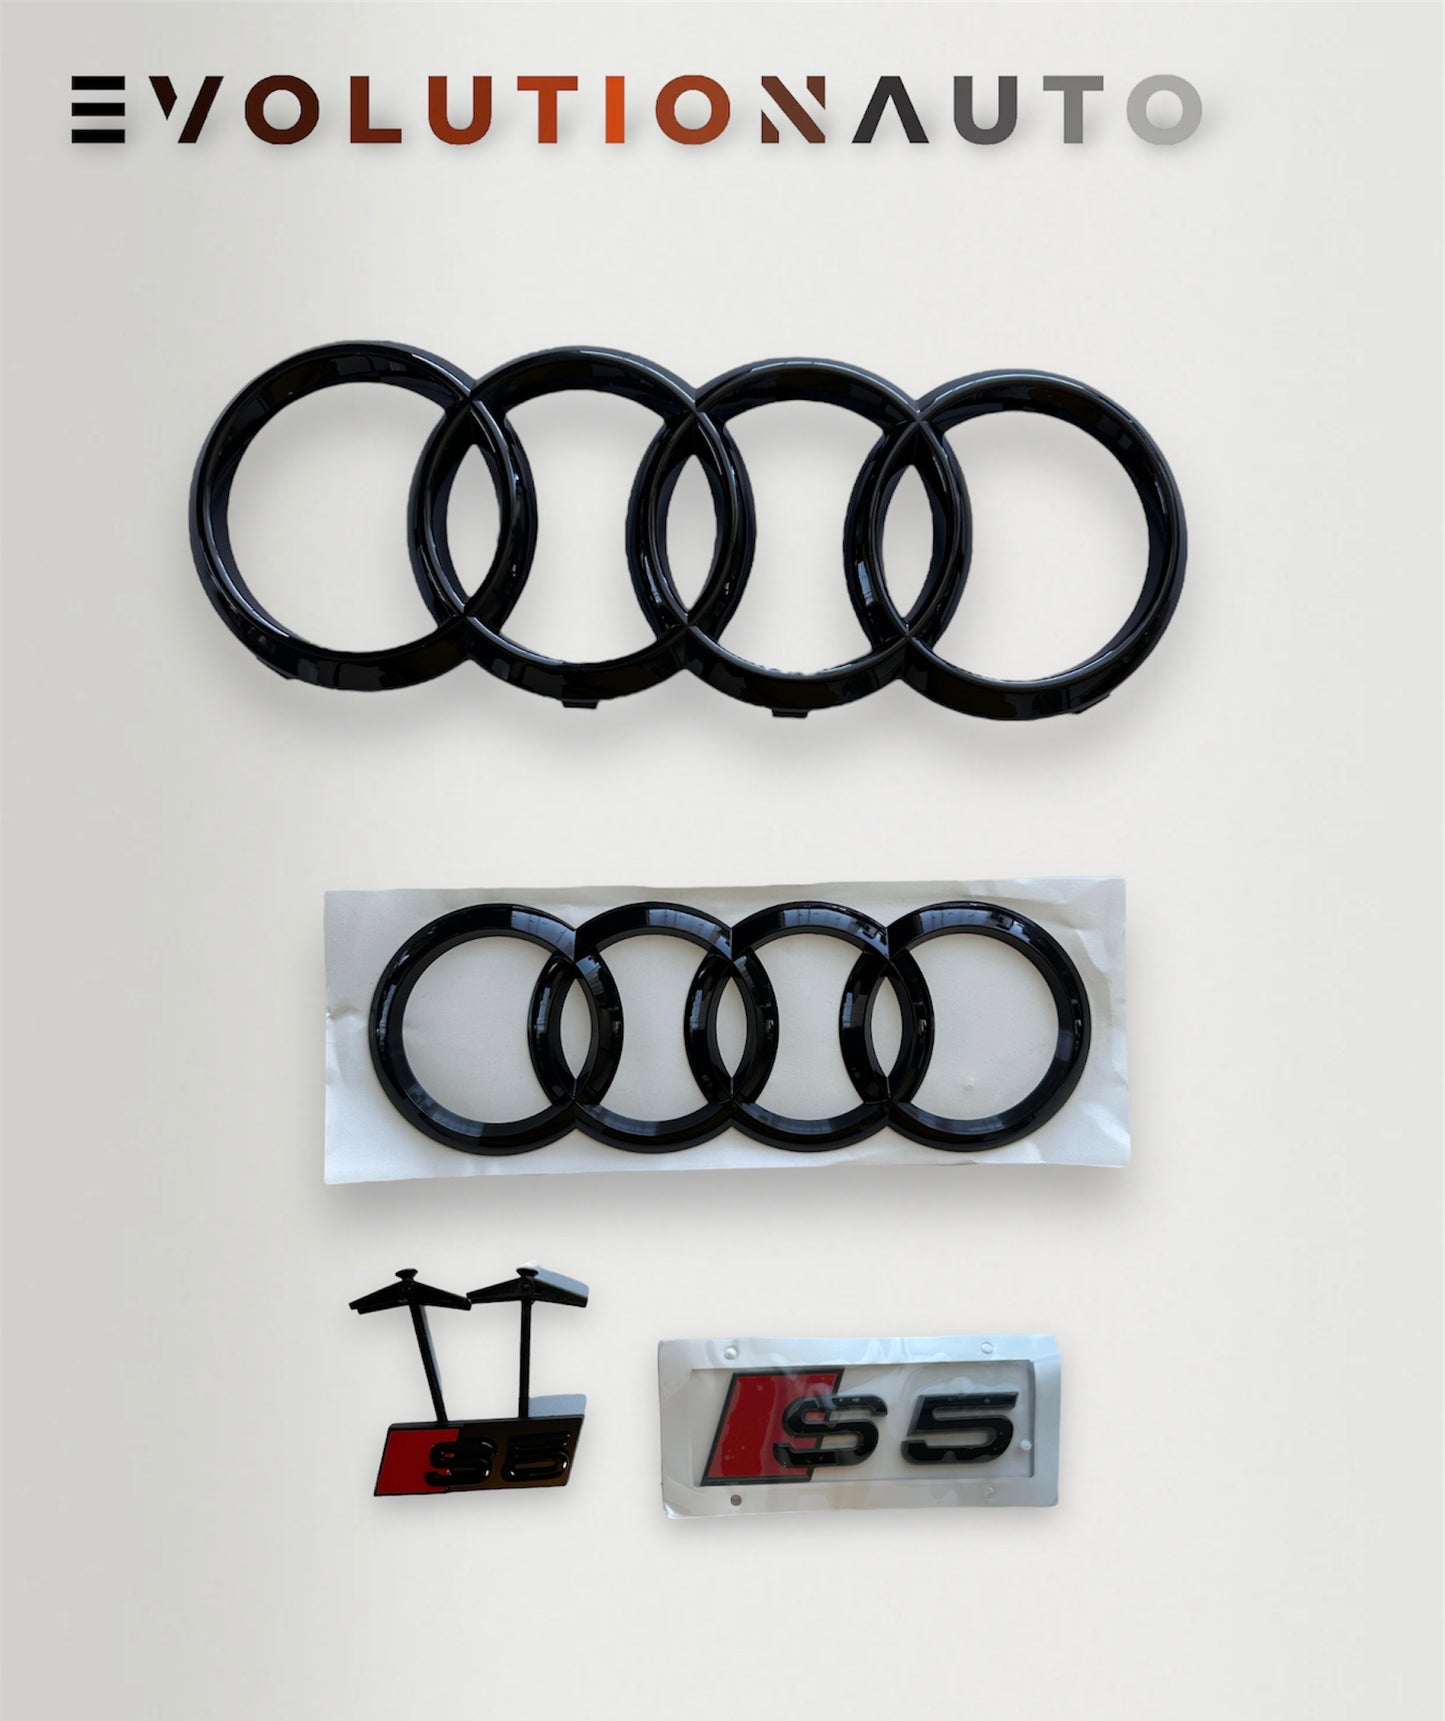 Genuine Audi Rear Trunk '4 Rings' Gloss Black Badge for S3